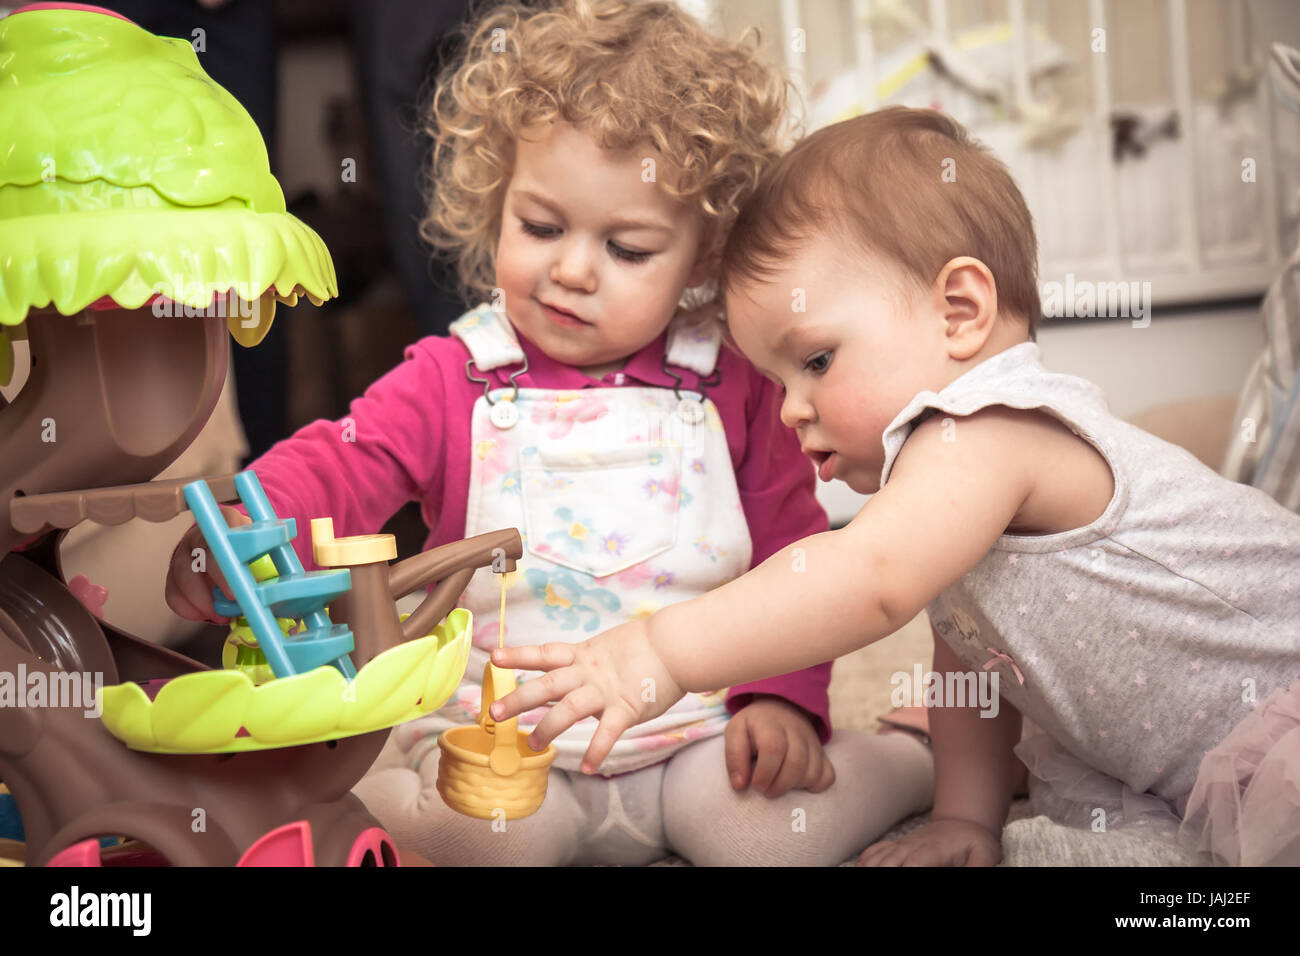 Kinder spielen zusammen im Kinderzimmer mit Spielzeug für Kinder Kommunikation und glückliche Kindheit Stockfoto